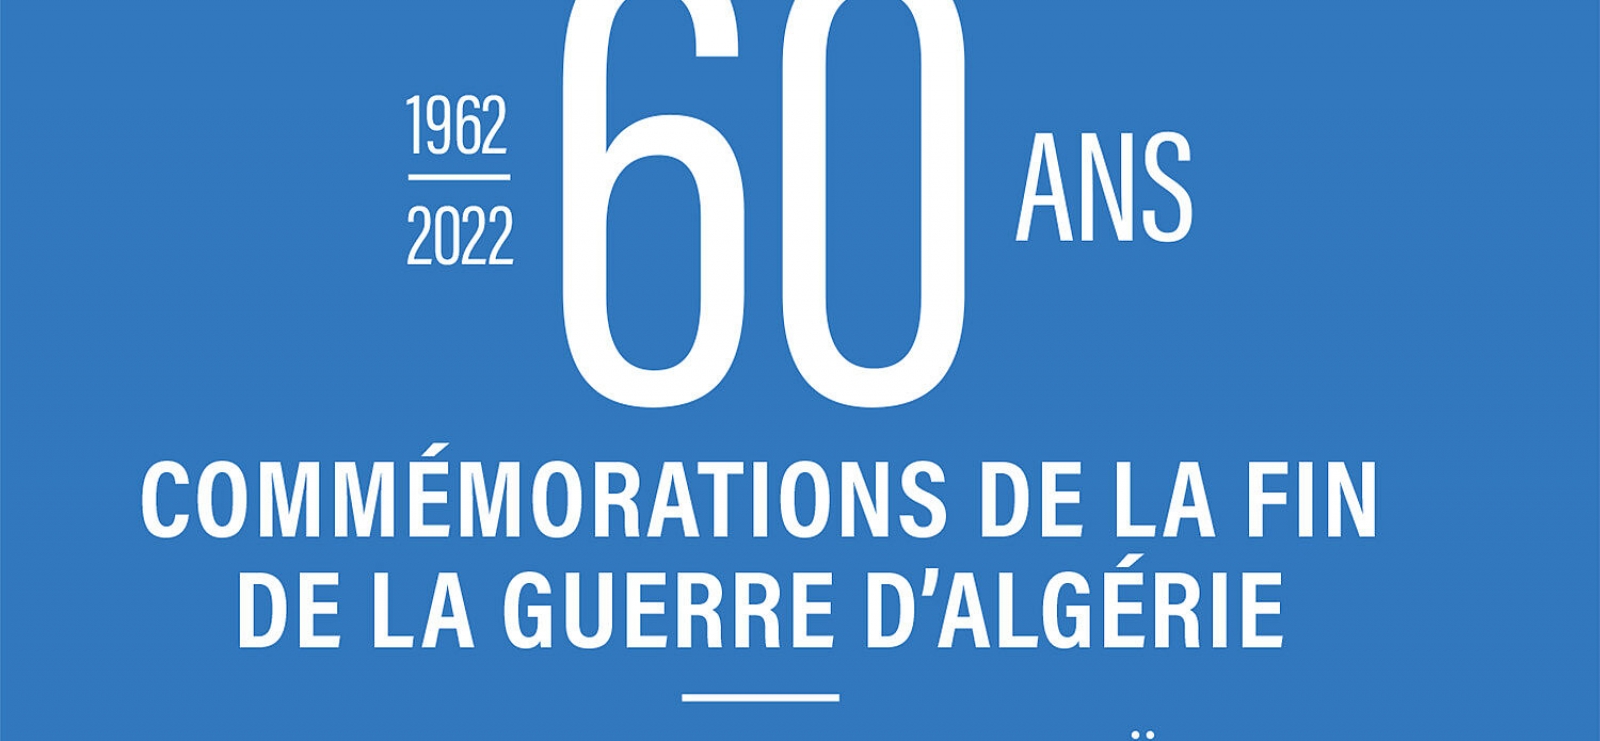 60 ans : Commémorations de la fin de la guerre d'Algérie